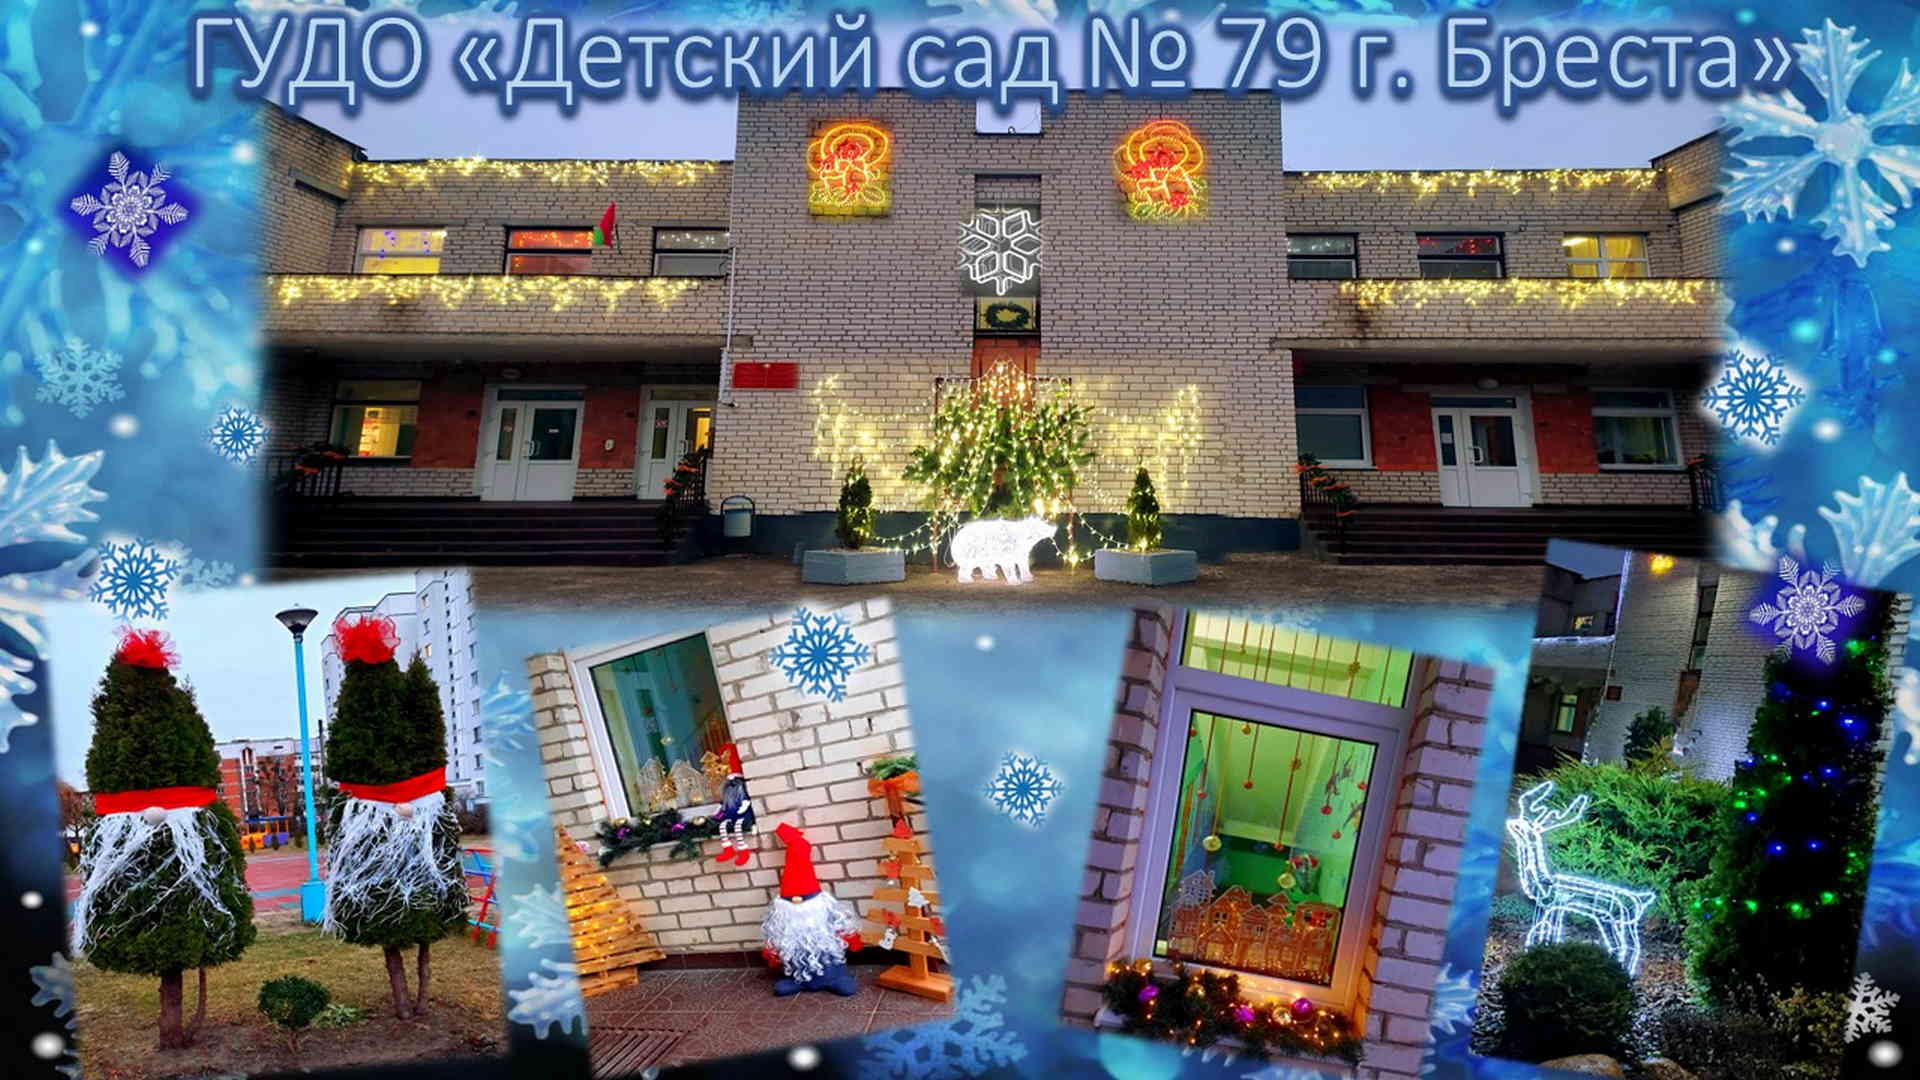 ГУДО "Детский сад №79 г. Бреста" участвует в смотре-конкурсе на лучшее новогоднее оформление Ленинского района г. Бреста.